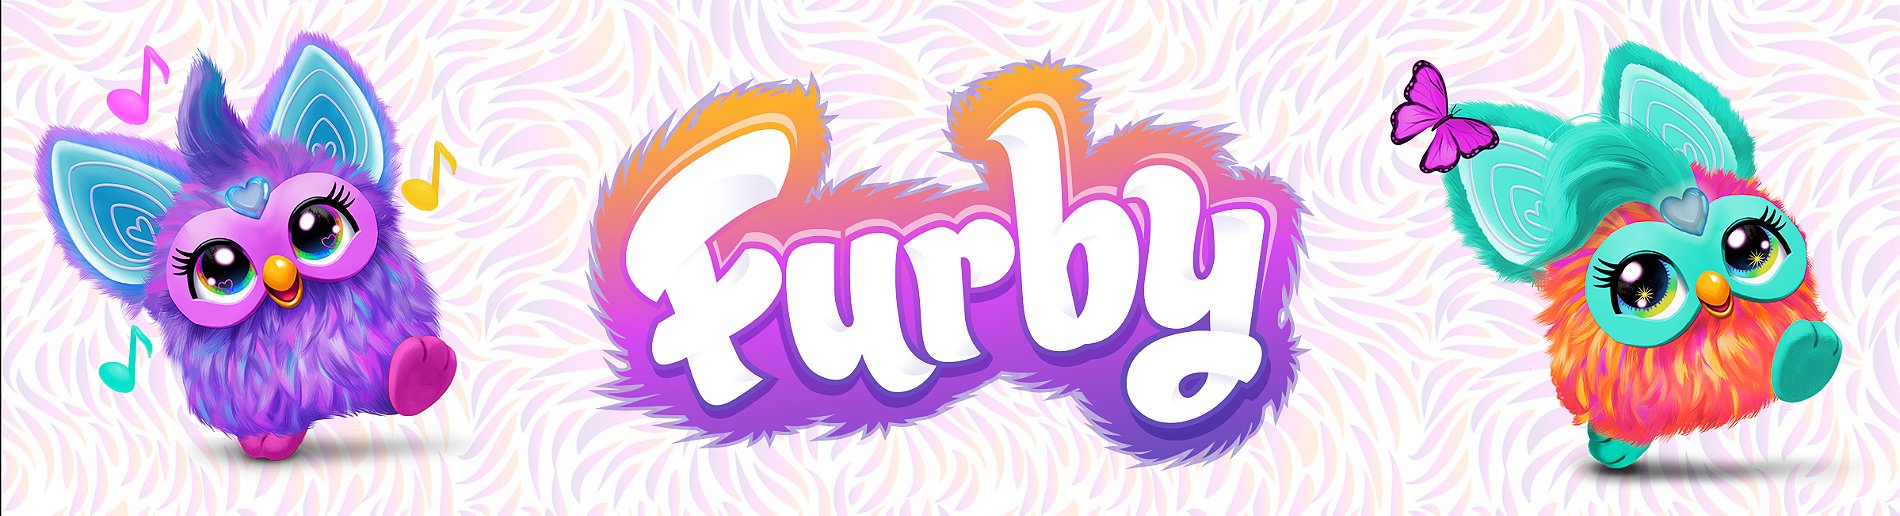 Peluche interactive Hasbro Furby Corail - Peluche interactive - Achat &  prix